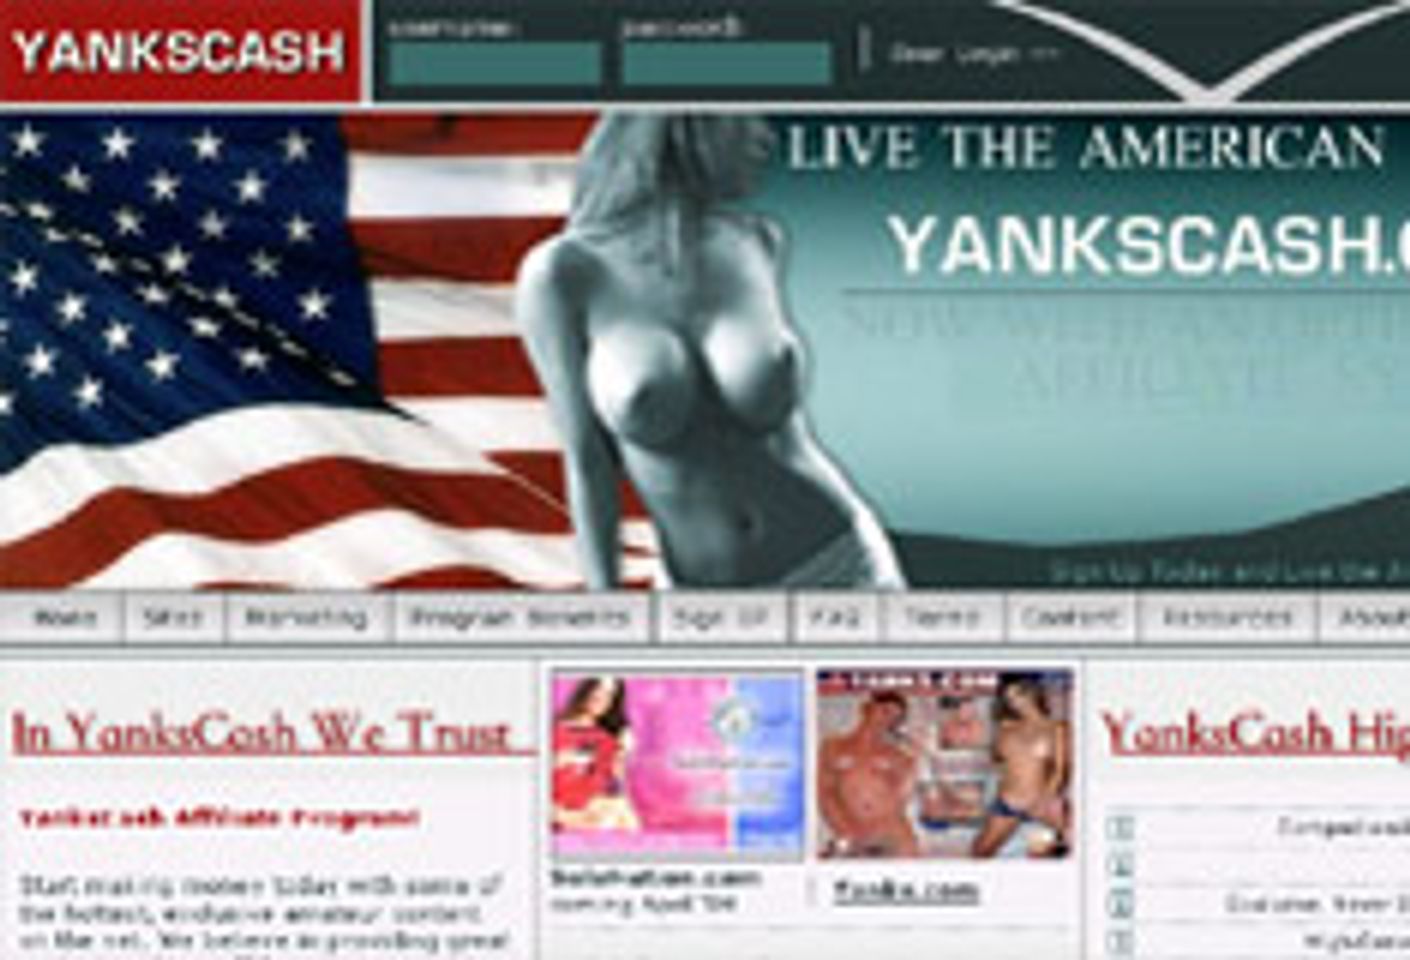 YanksCash Launches Version 2.0